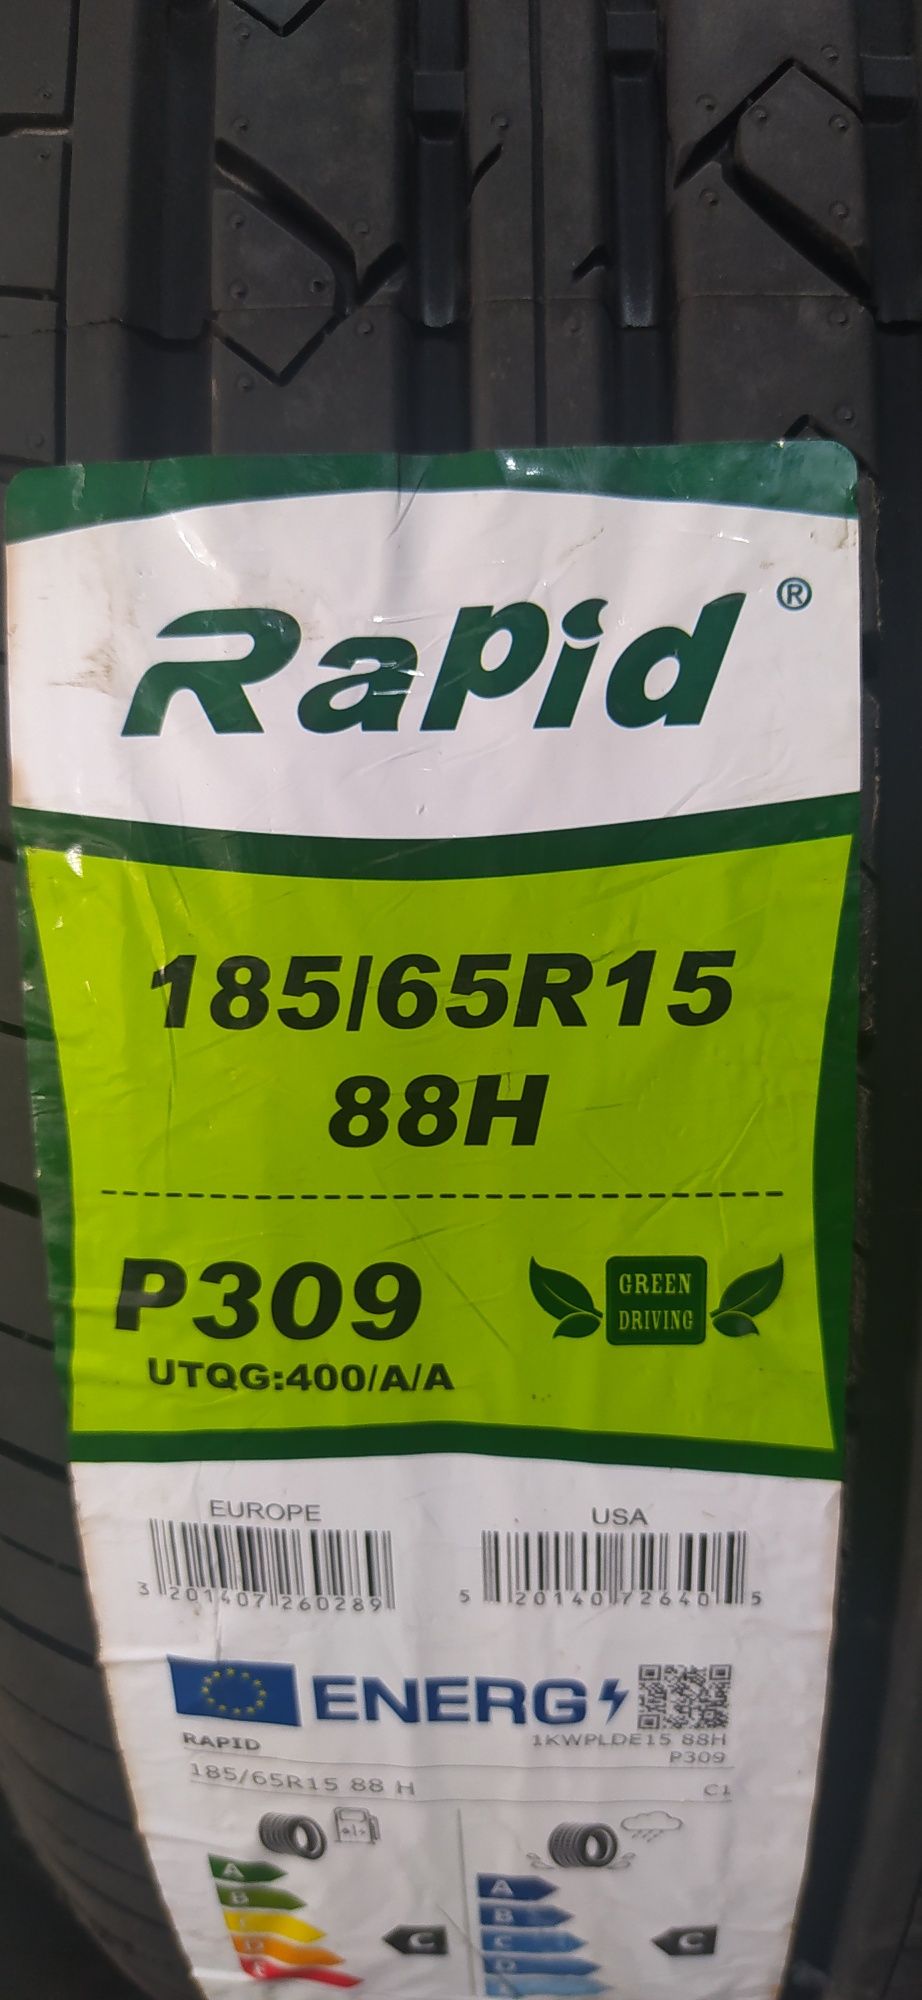 185/65R15. Rapid. P309